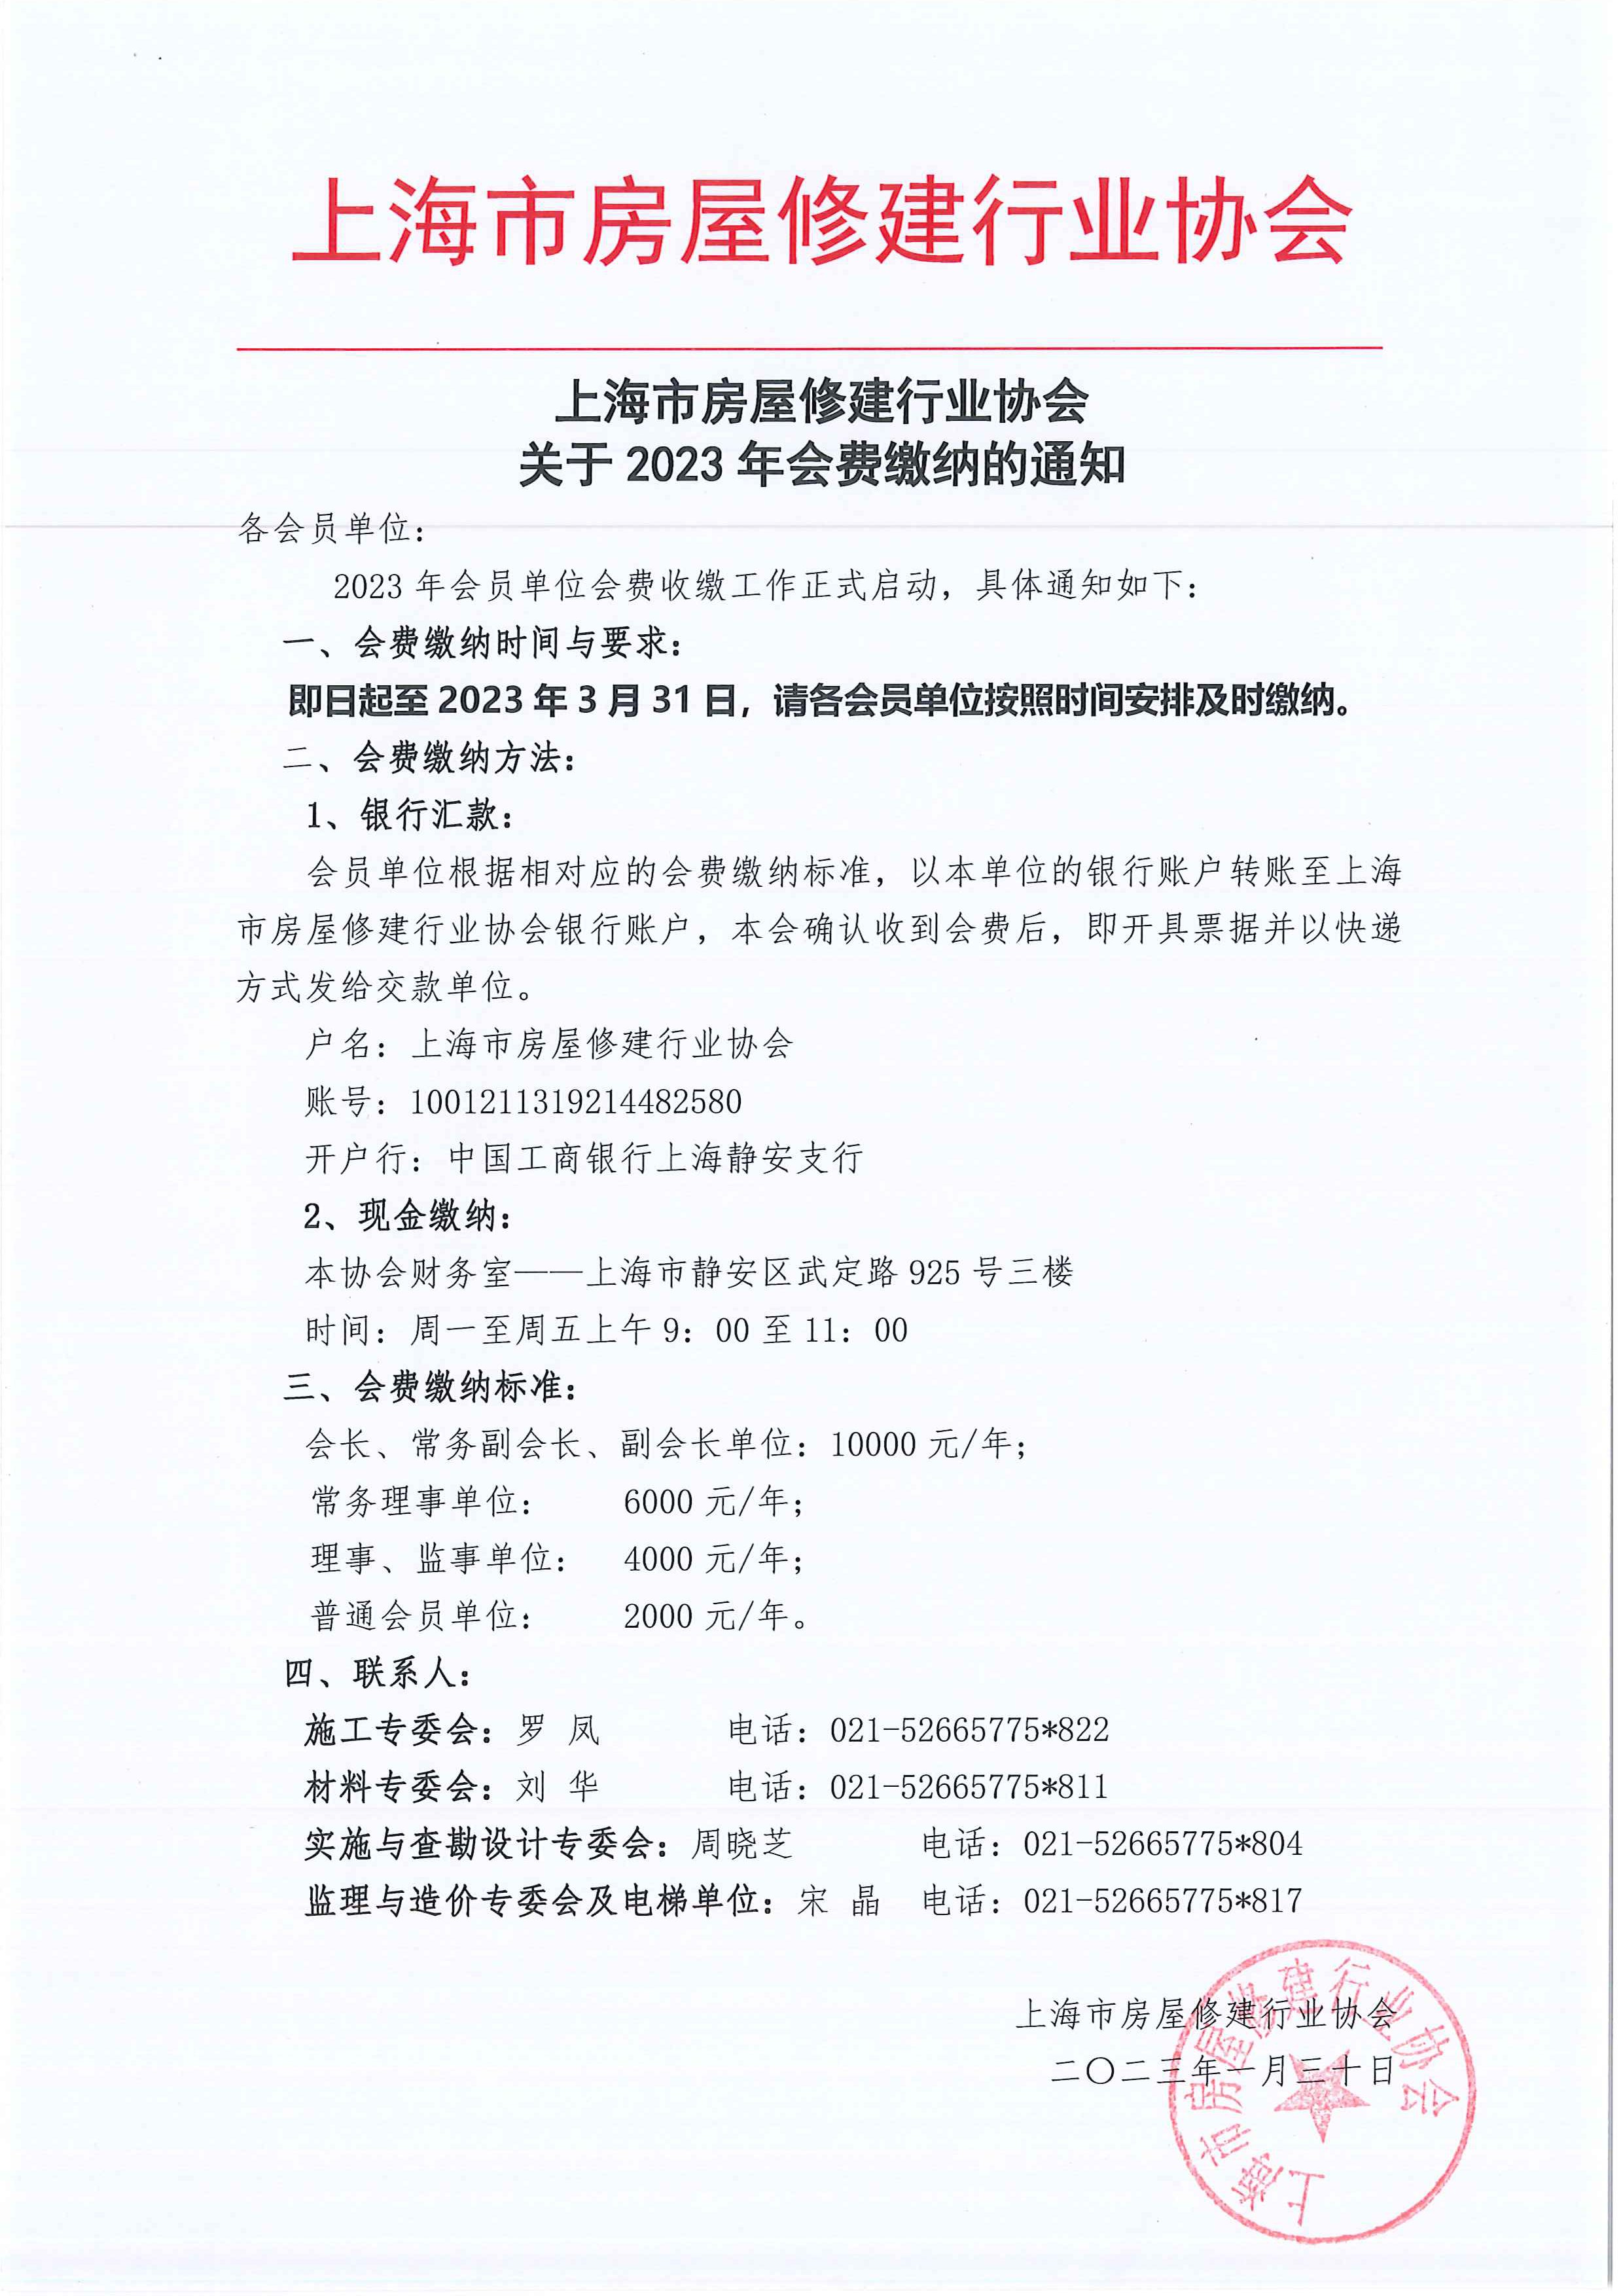 上海市房屋修建行业协会关于2023年会费缴纳的通知.jpg